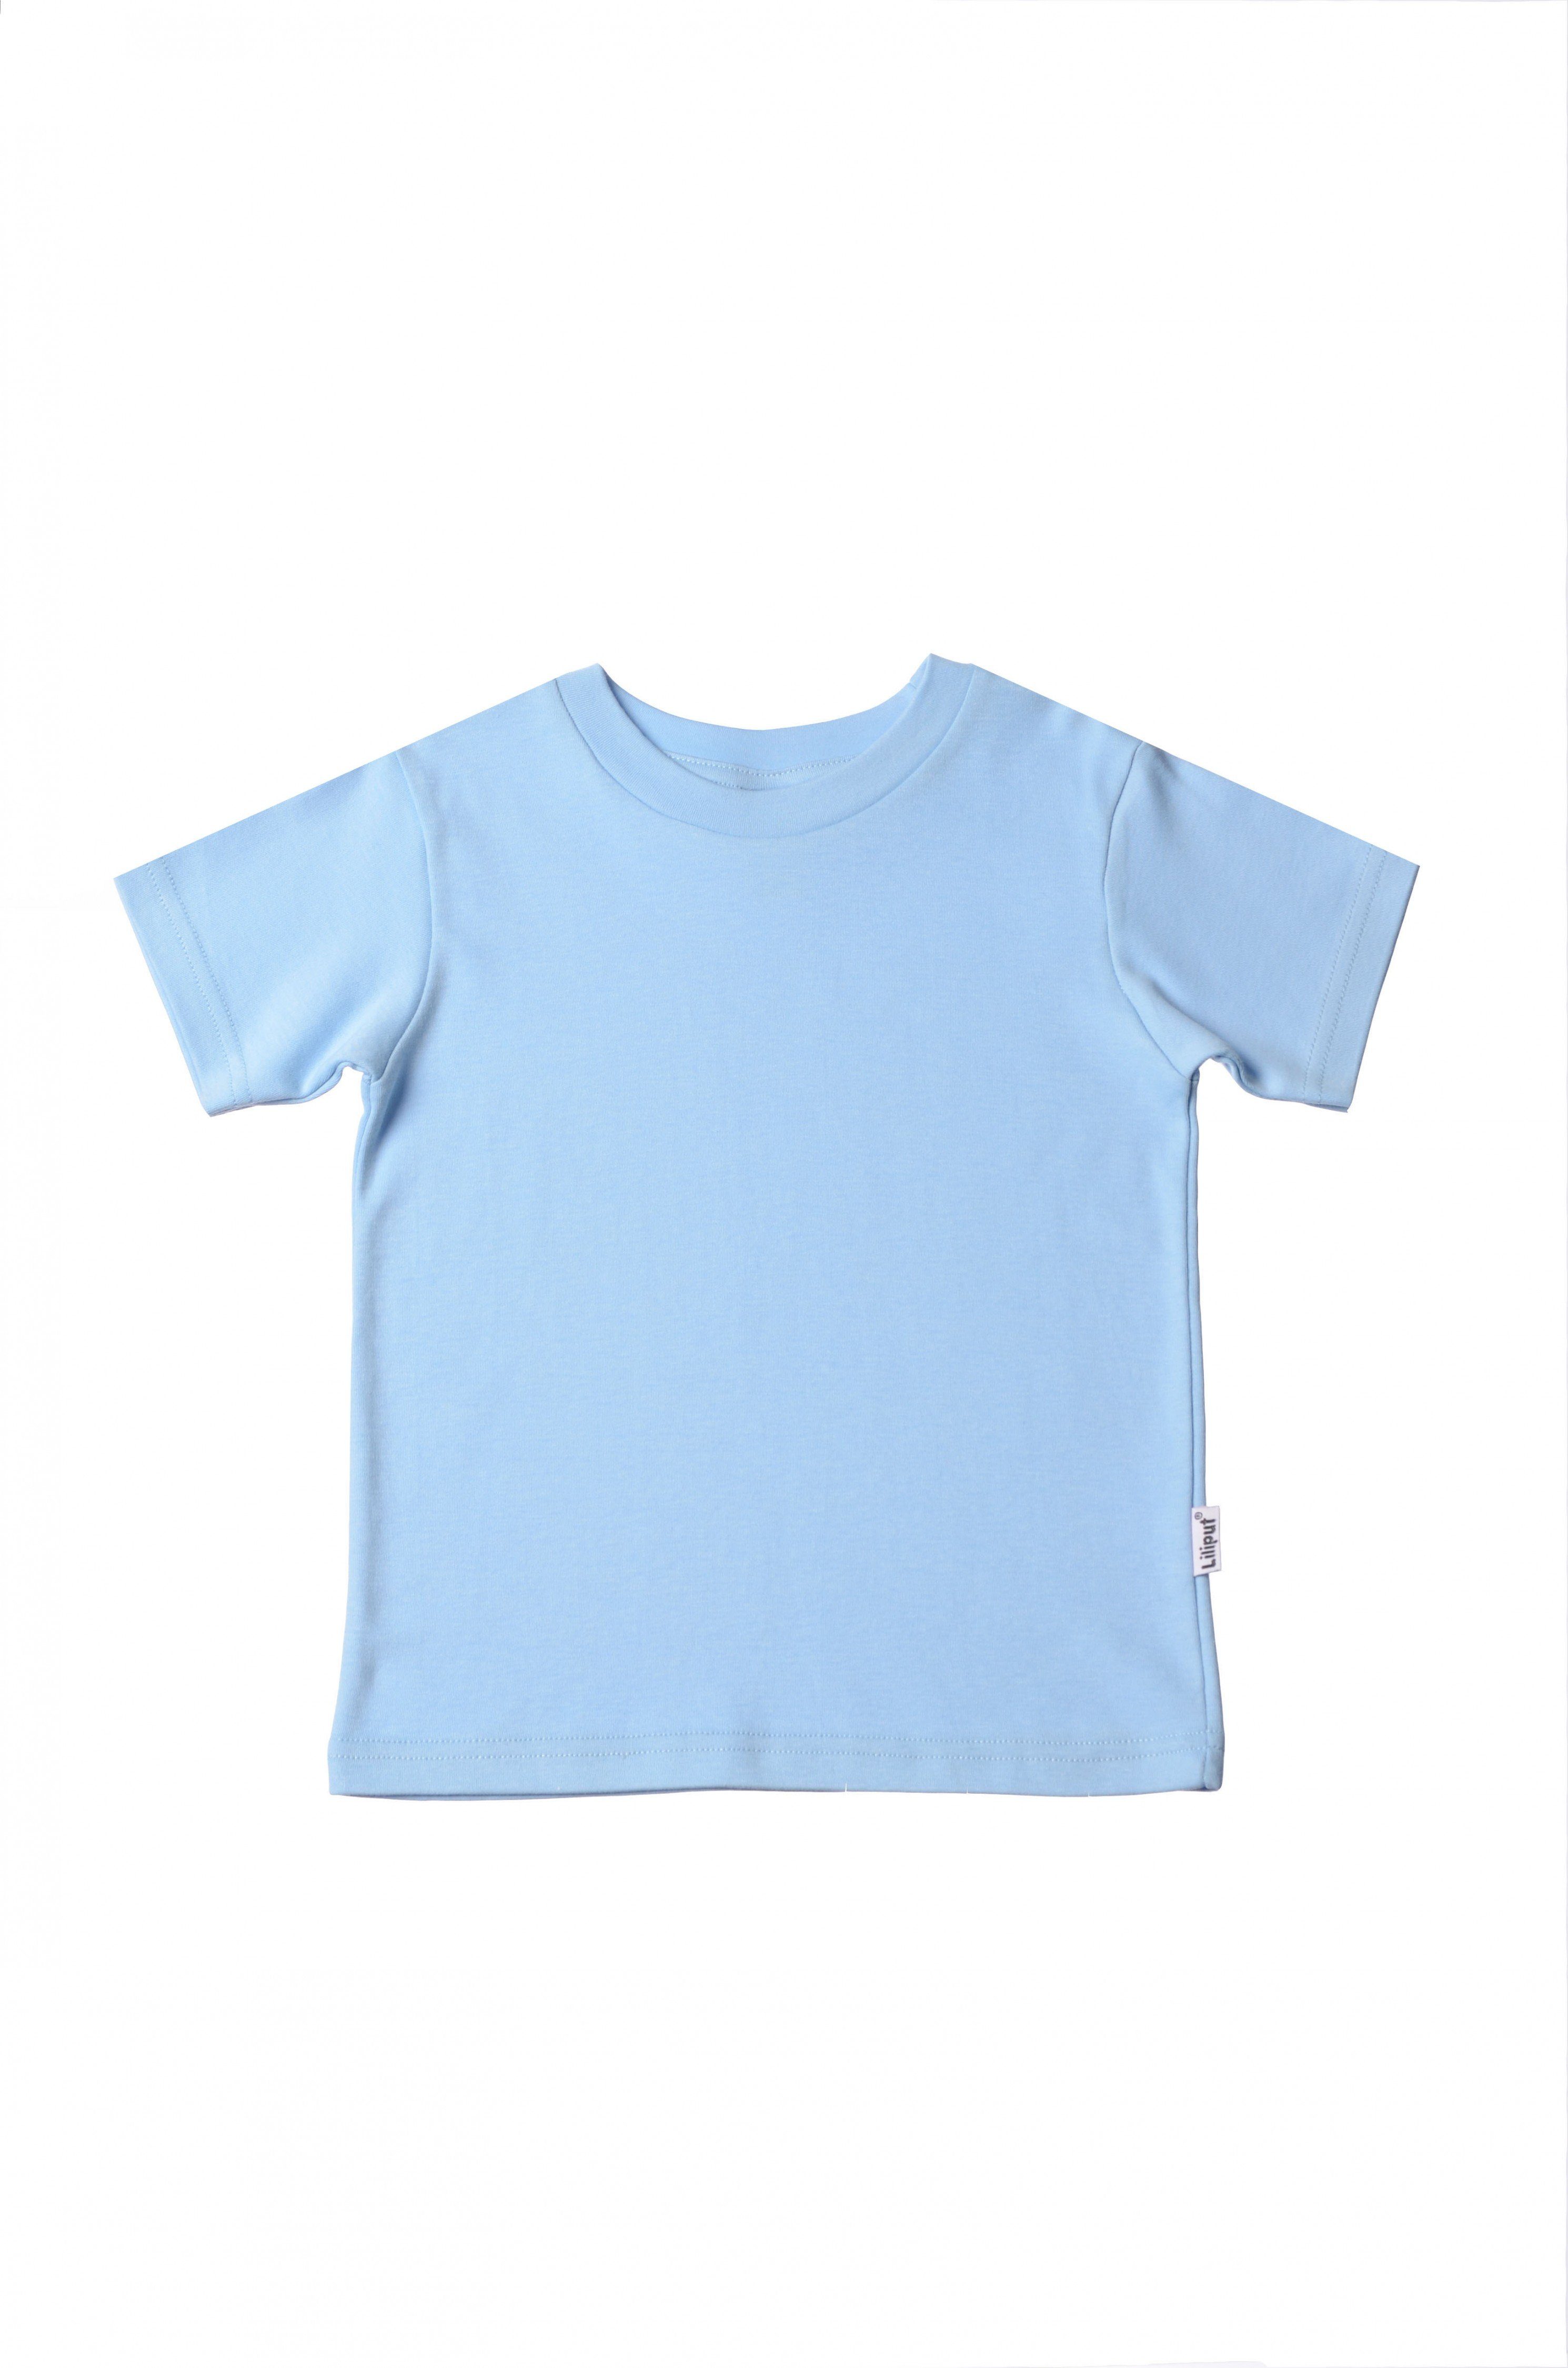 hellblau Liliput Design in niedlichem T-Shirt